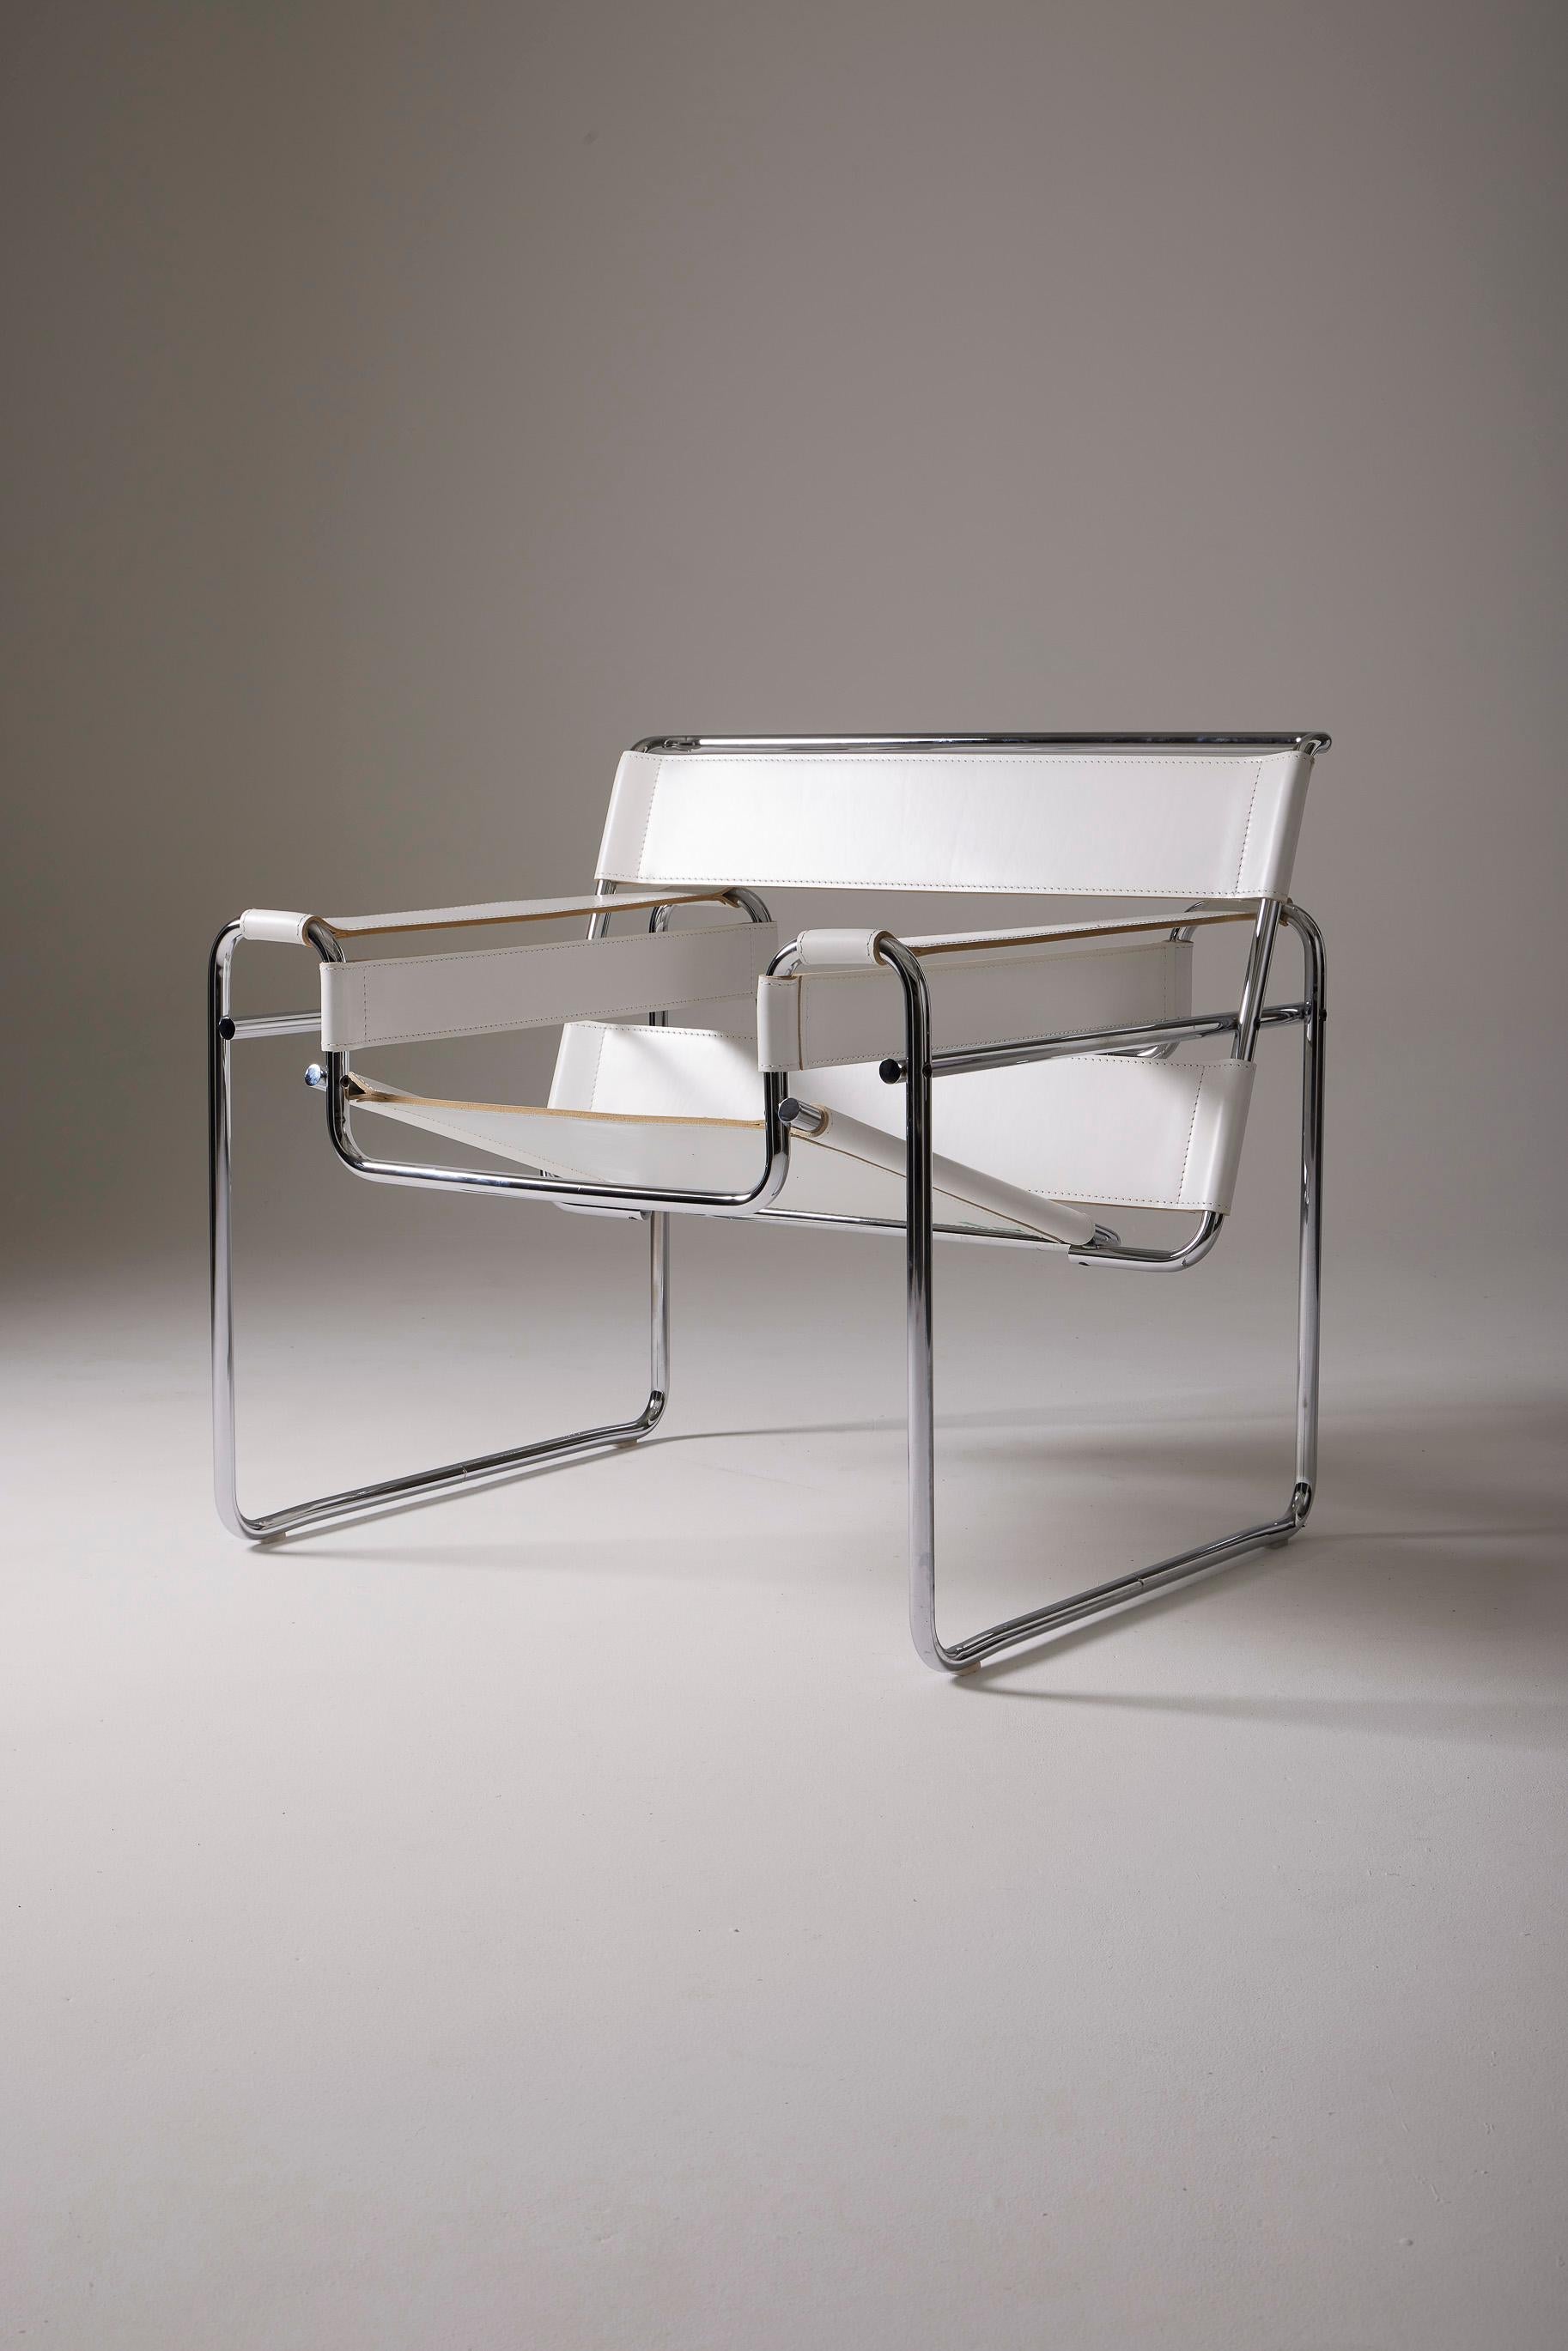 Chaise iconique Wassily du designer Marcel Breuer pour Knoll. Il a créé ce design en 1925 pour l'appartement du peintre Vassily Kandinsky, alors qu'il était encore étudiant au Bauhaus. Sa structure tubulaire, inspirée de celle d'un vélo, est en